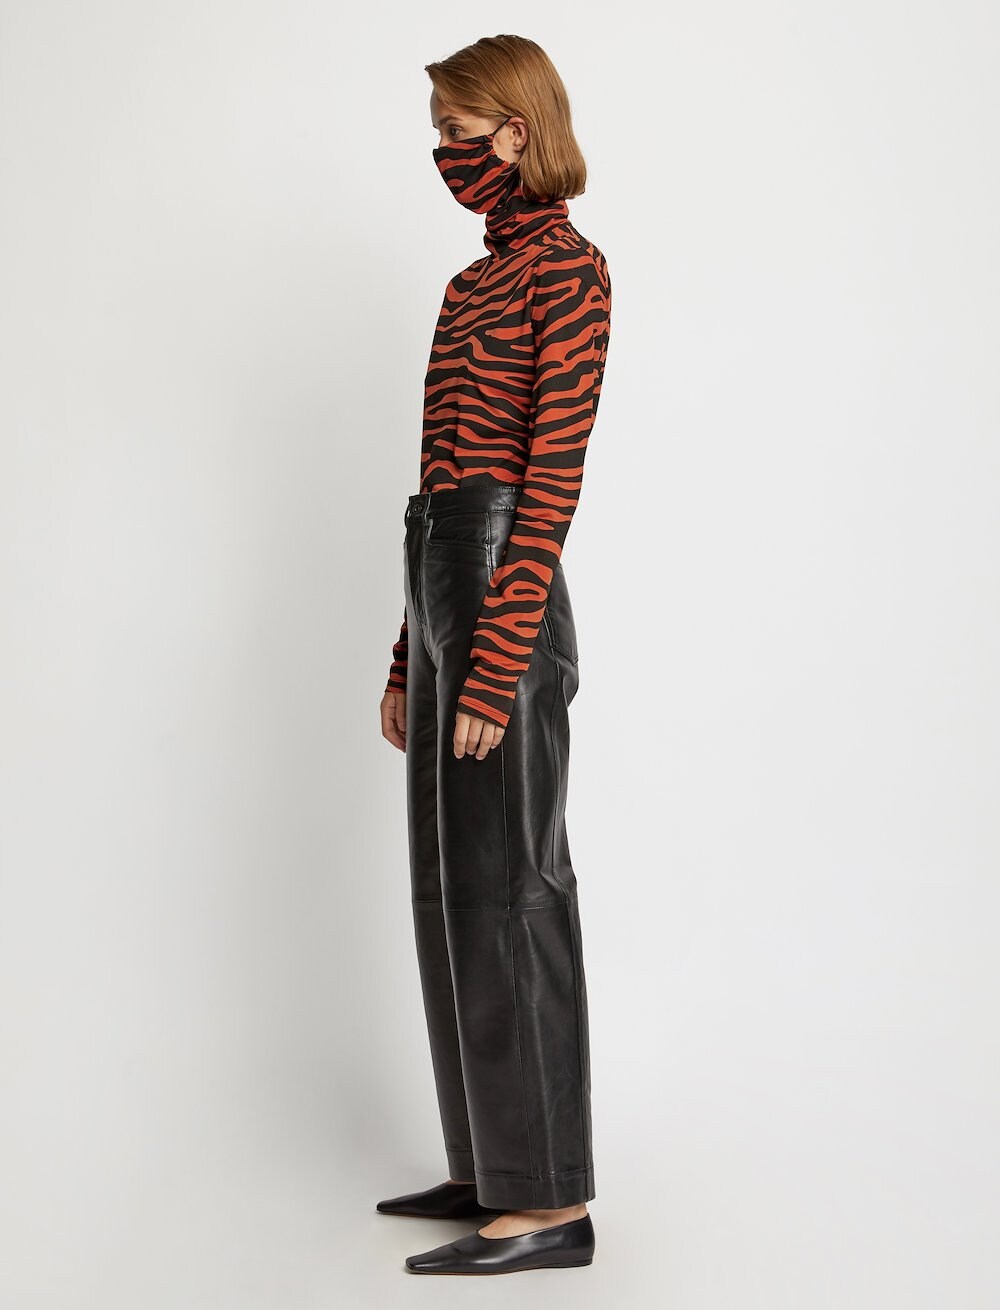 Zebra Print Masked Turtleneck Jersey Top in orange | Proenza Schouler